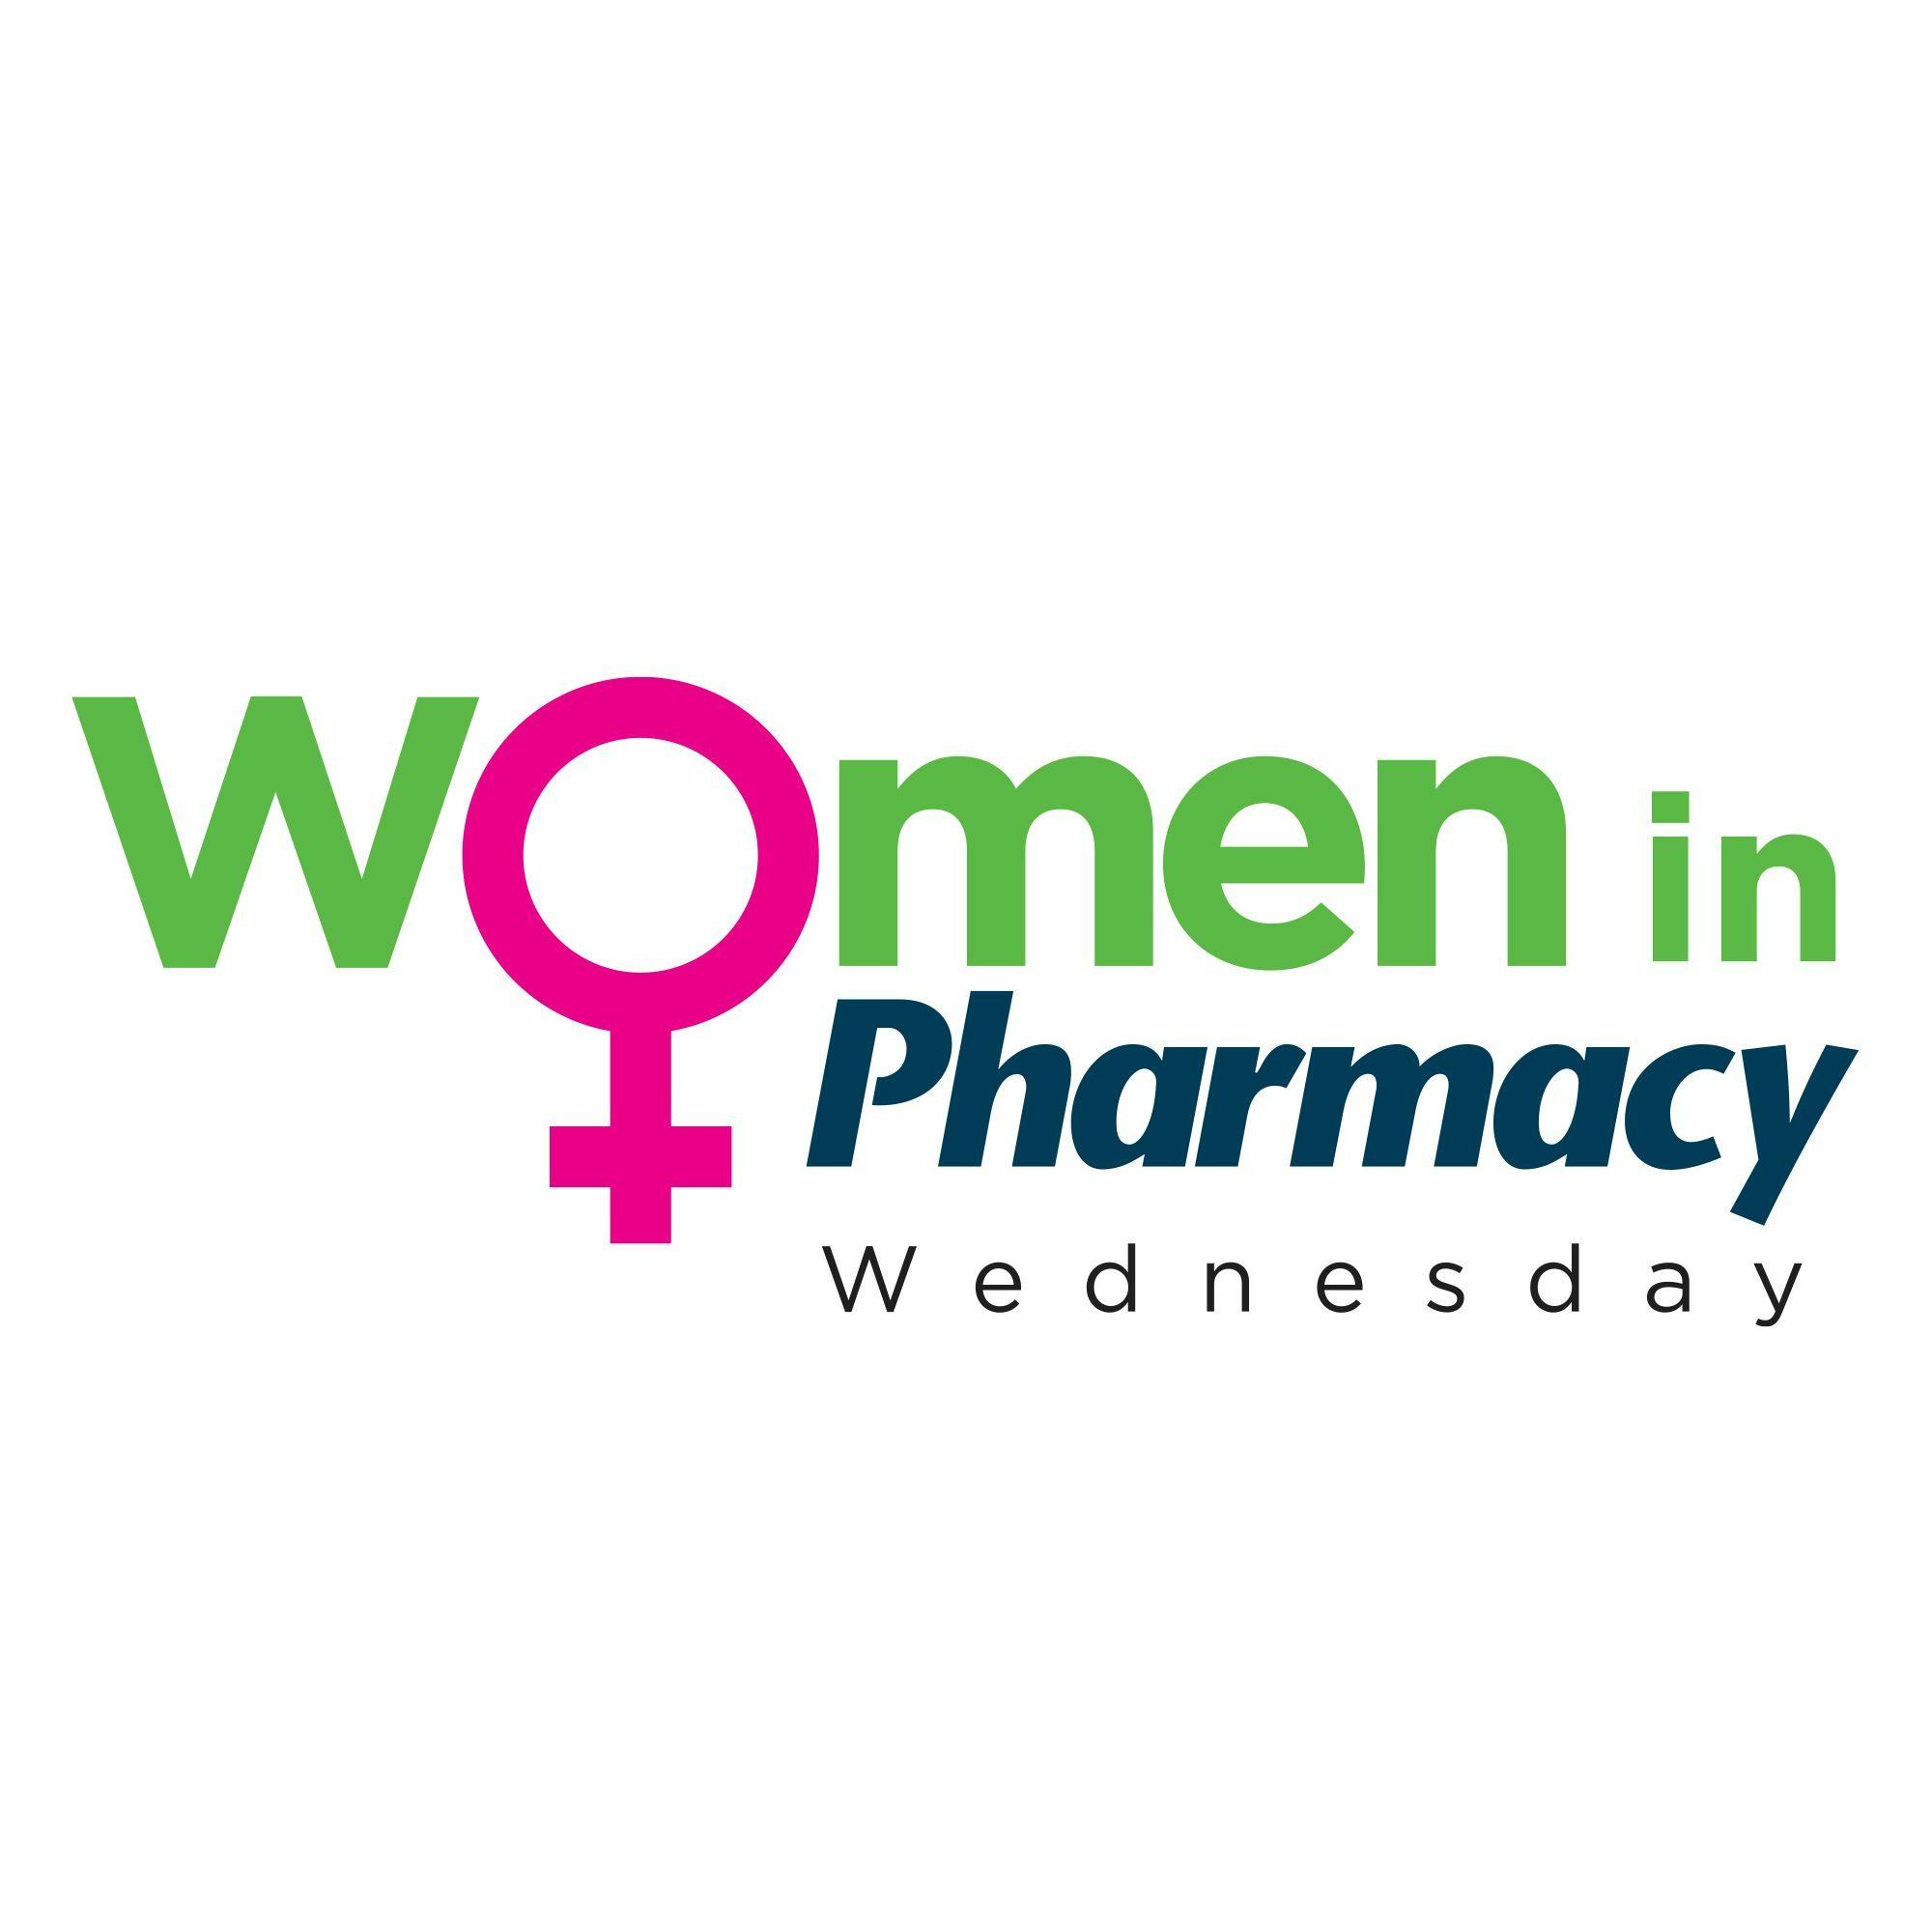 Pharmacy Focus Podcast: Women in Pharmacy Wednesday- Episode 6